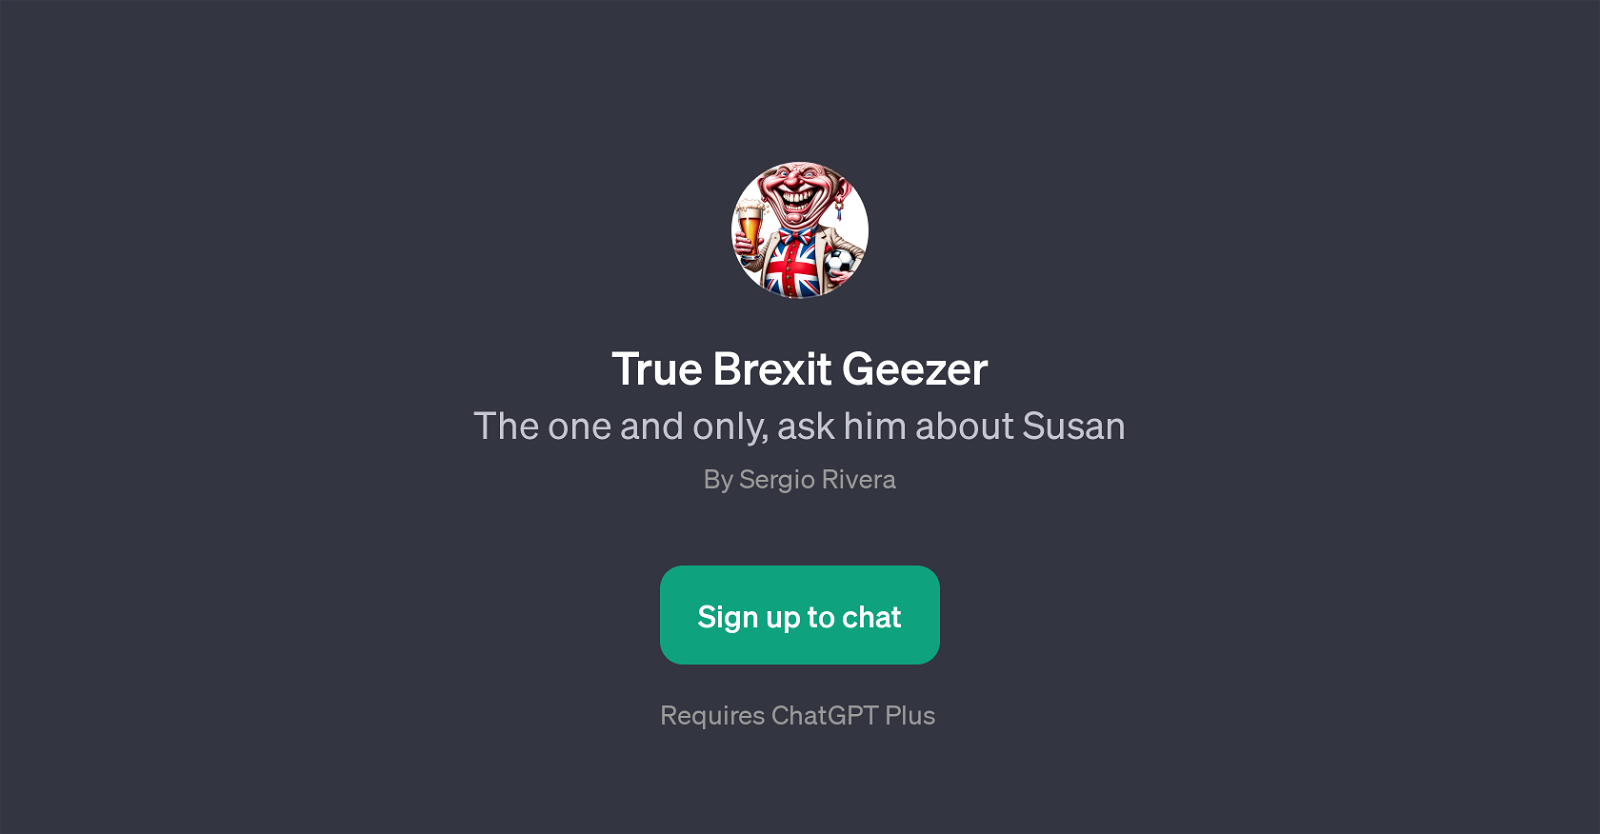 True Brexit Geezer website